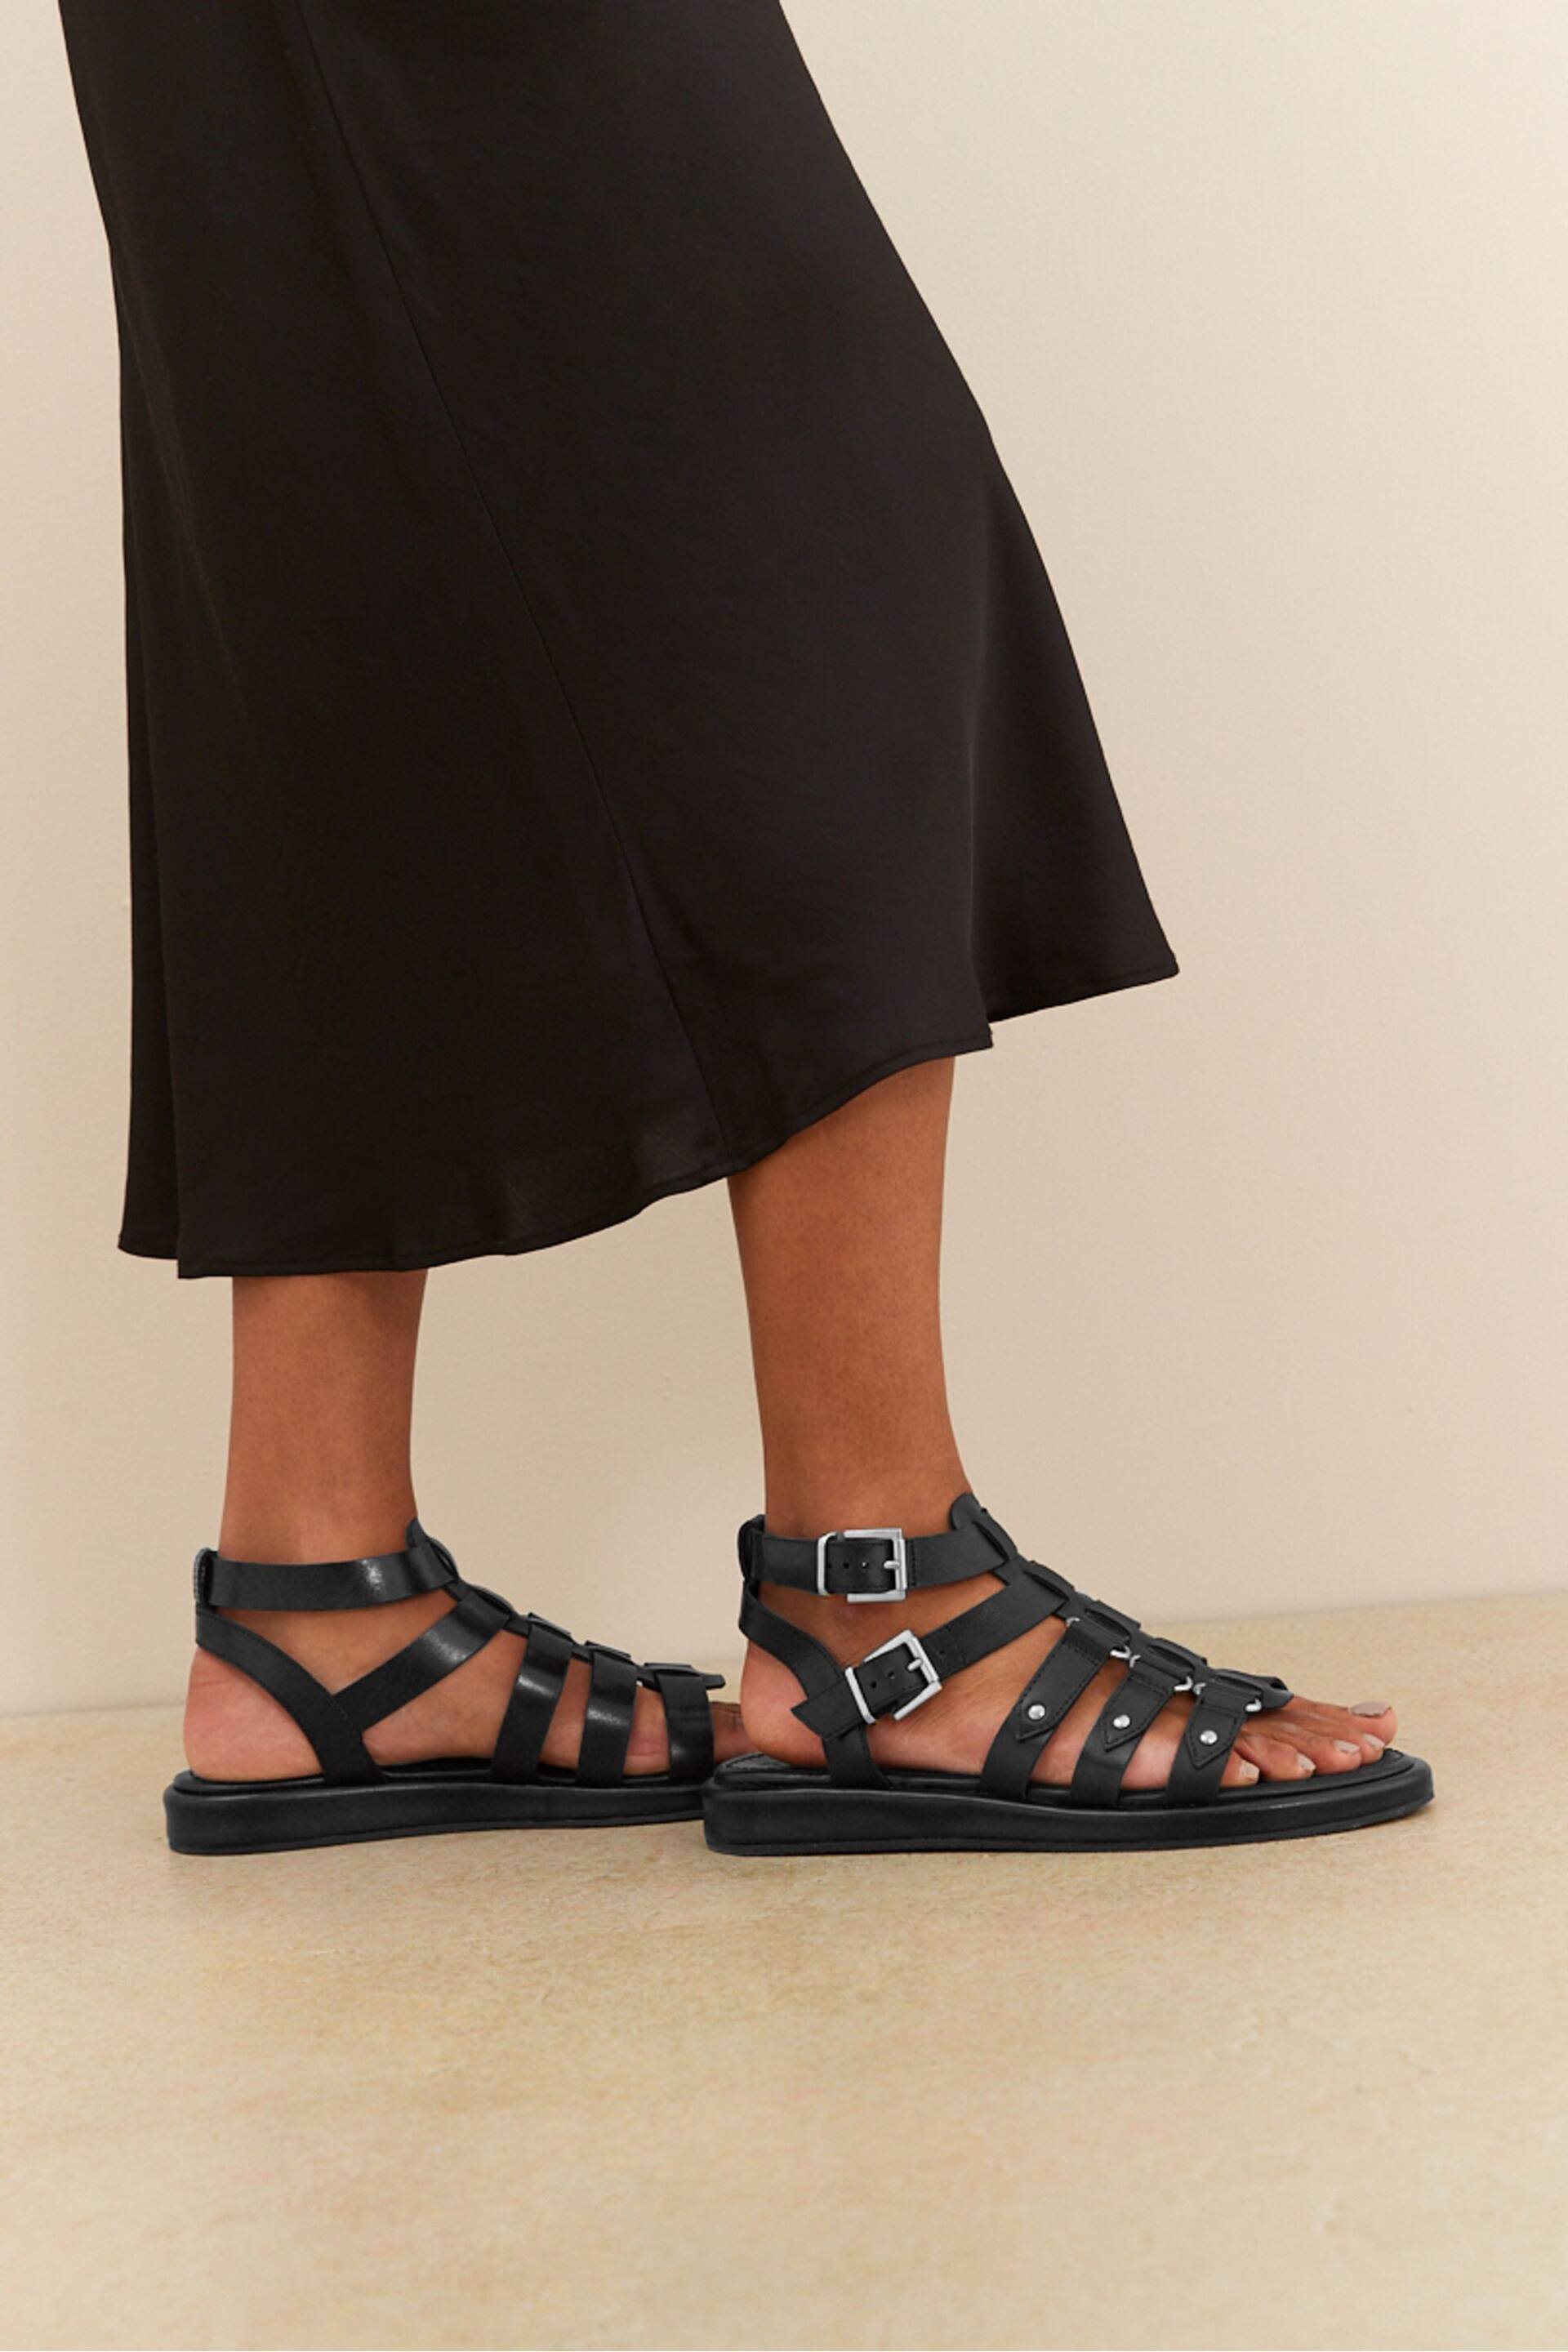 Black Regular/Wide Fit Forever Comfort® Leather Gladiator Sandals - Image 3 of 8